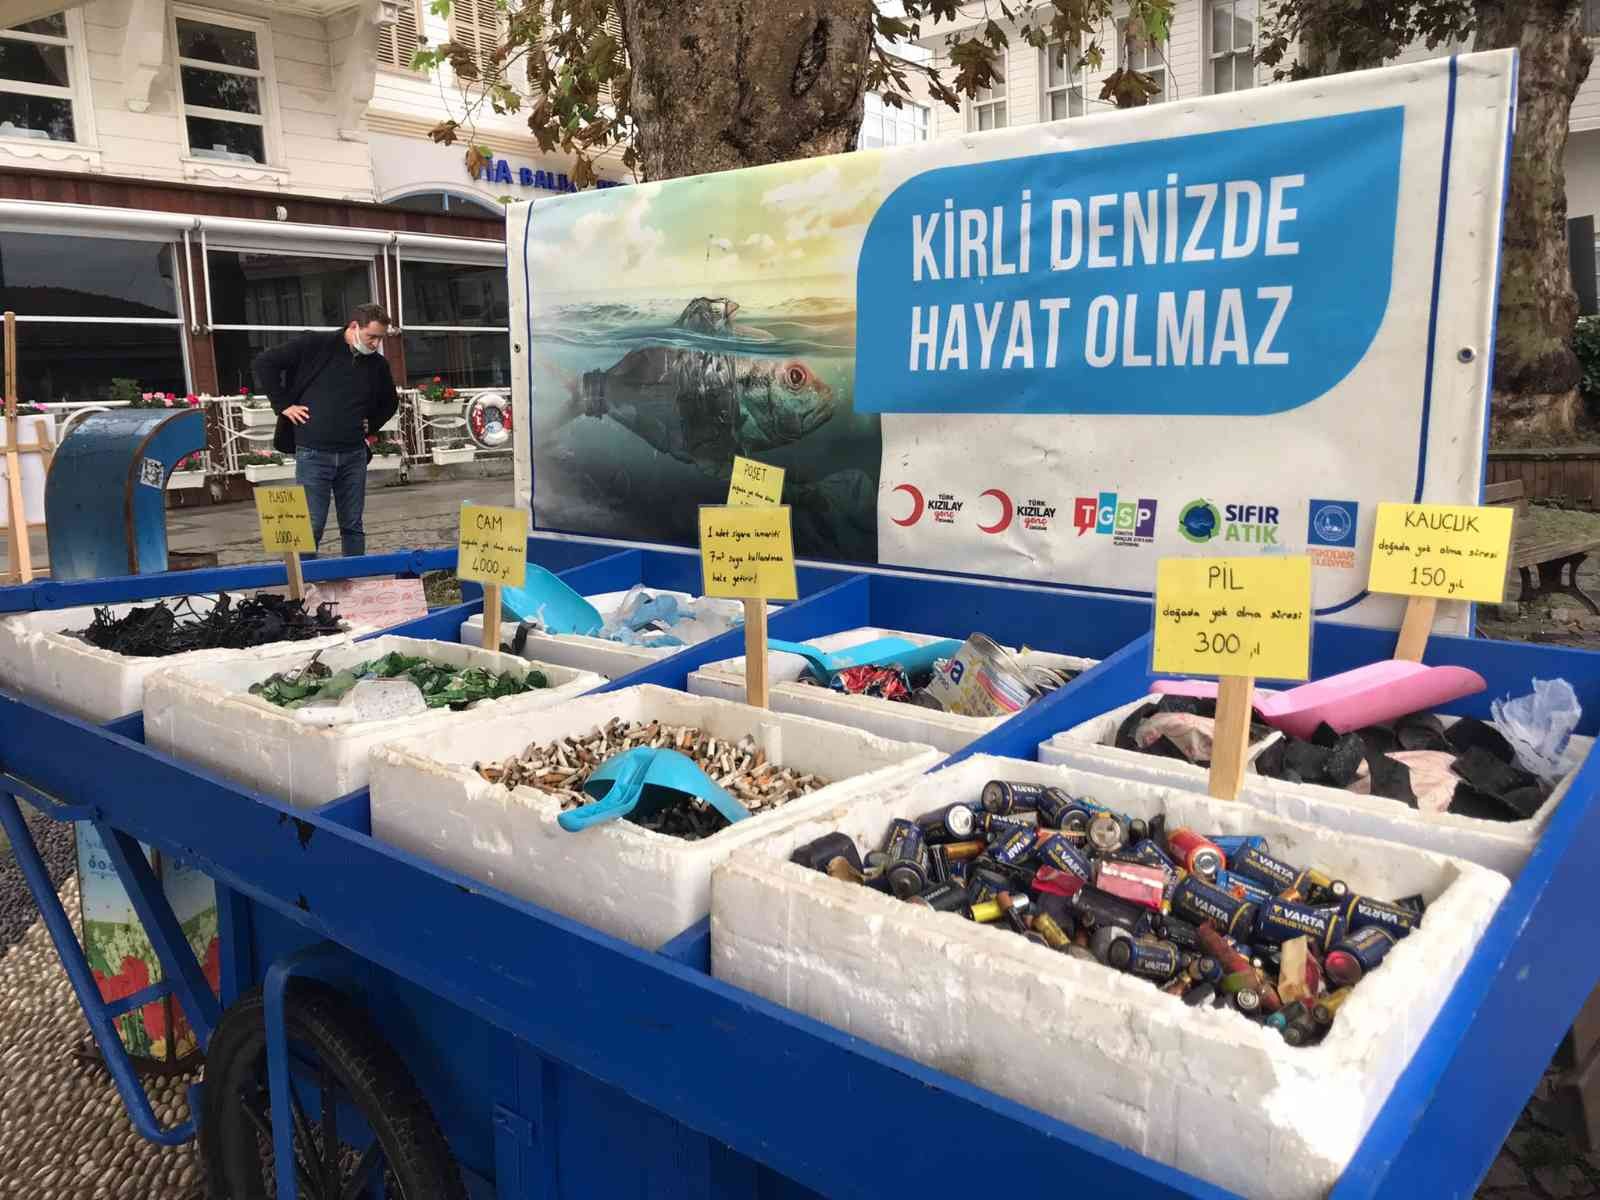 Üsküdar’da dalgıçlar tarafından su altı temizliği yapıldı #istanbul